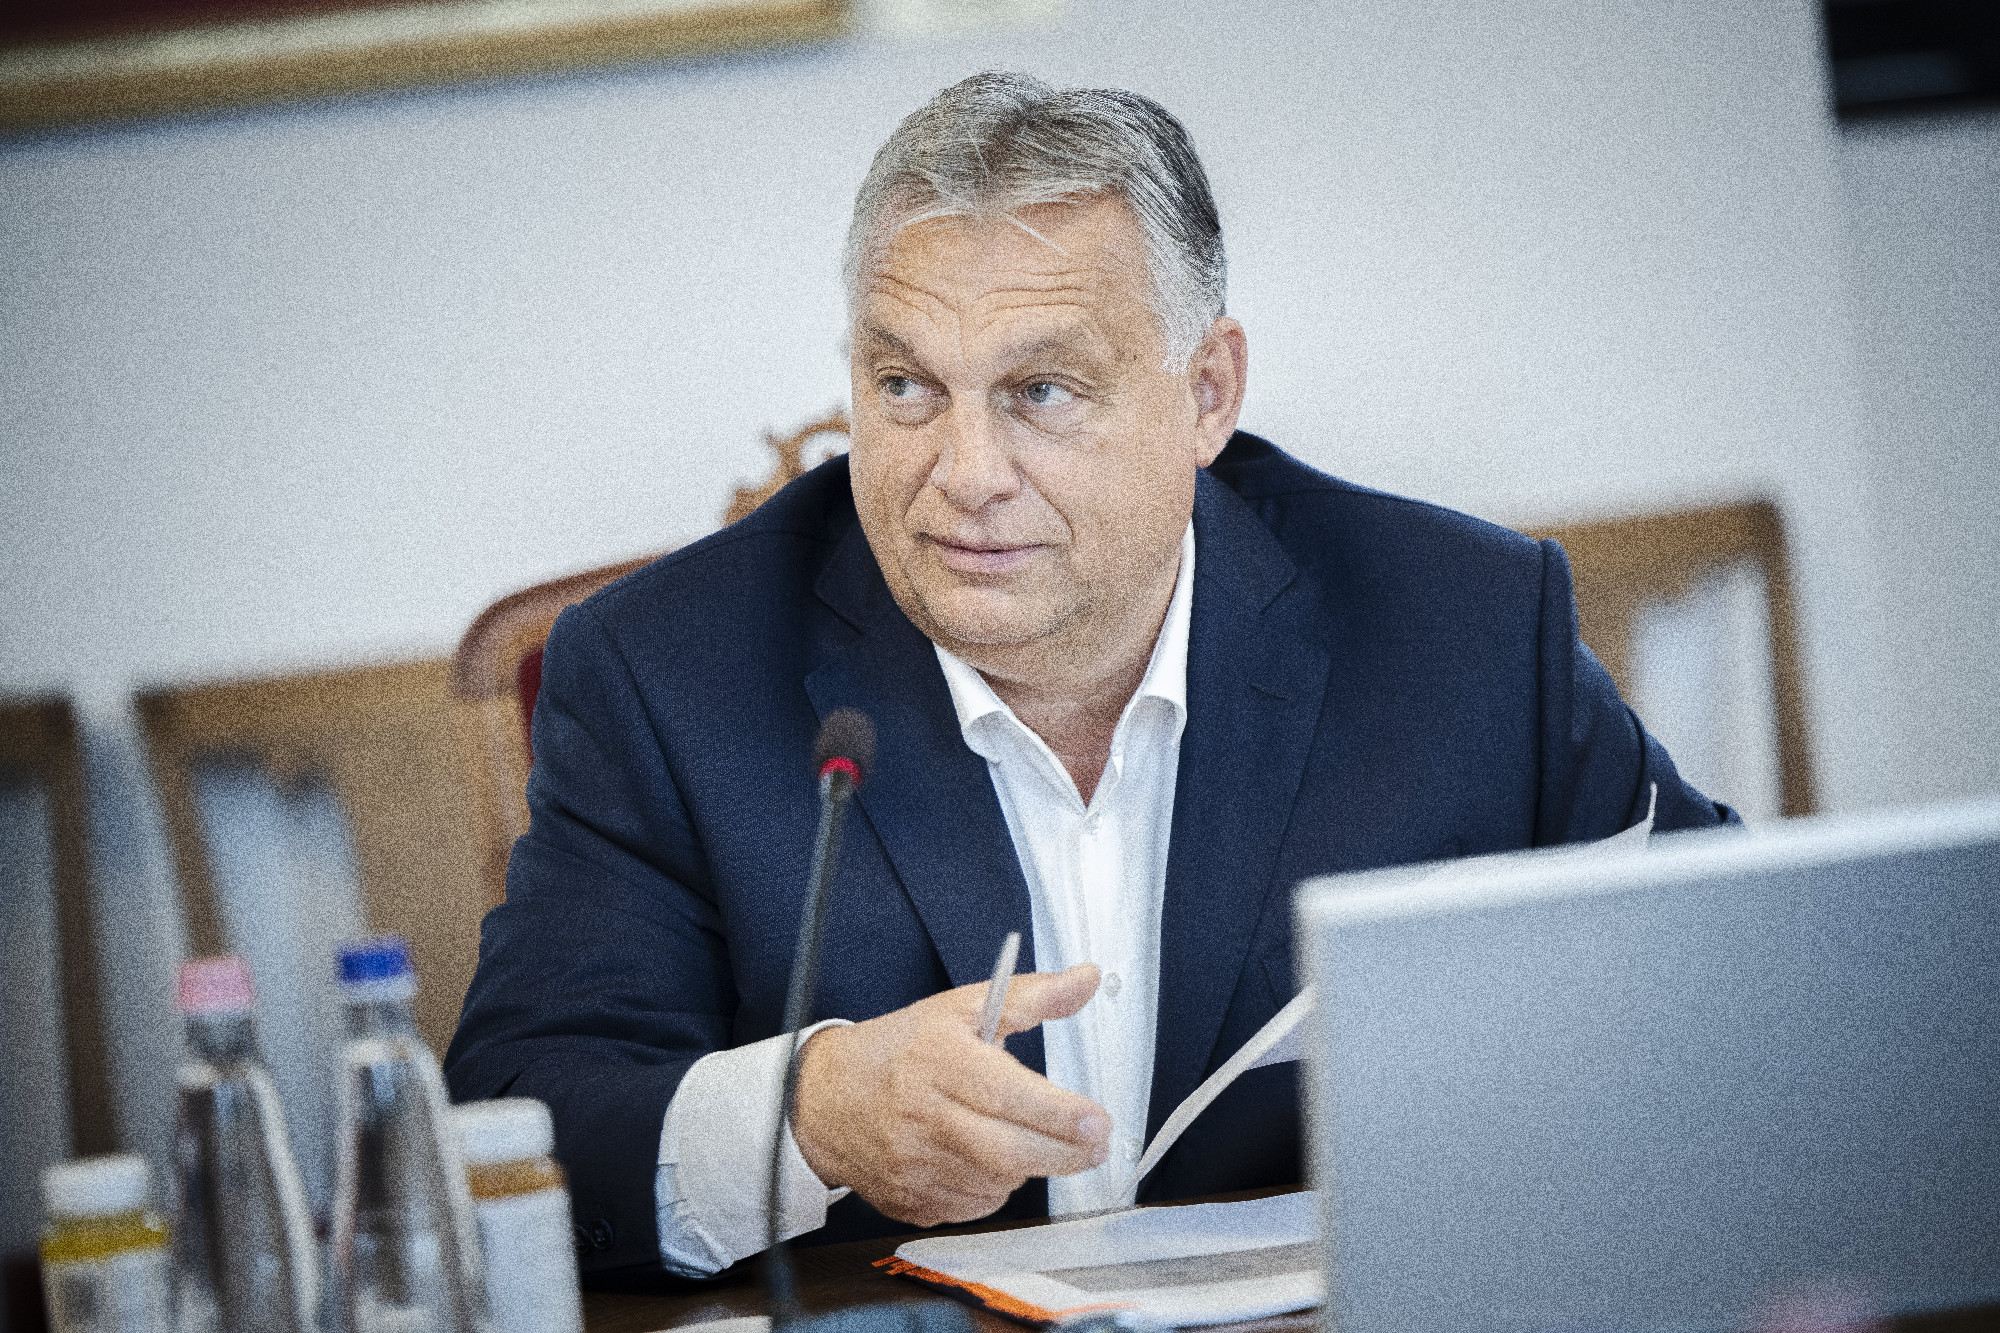 Háború, béke, infláció – ezekről is beszéltek Orbán Viktorék a kormányülésen